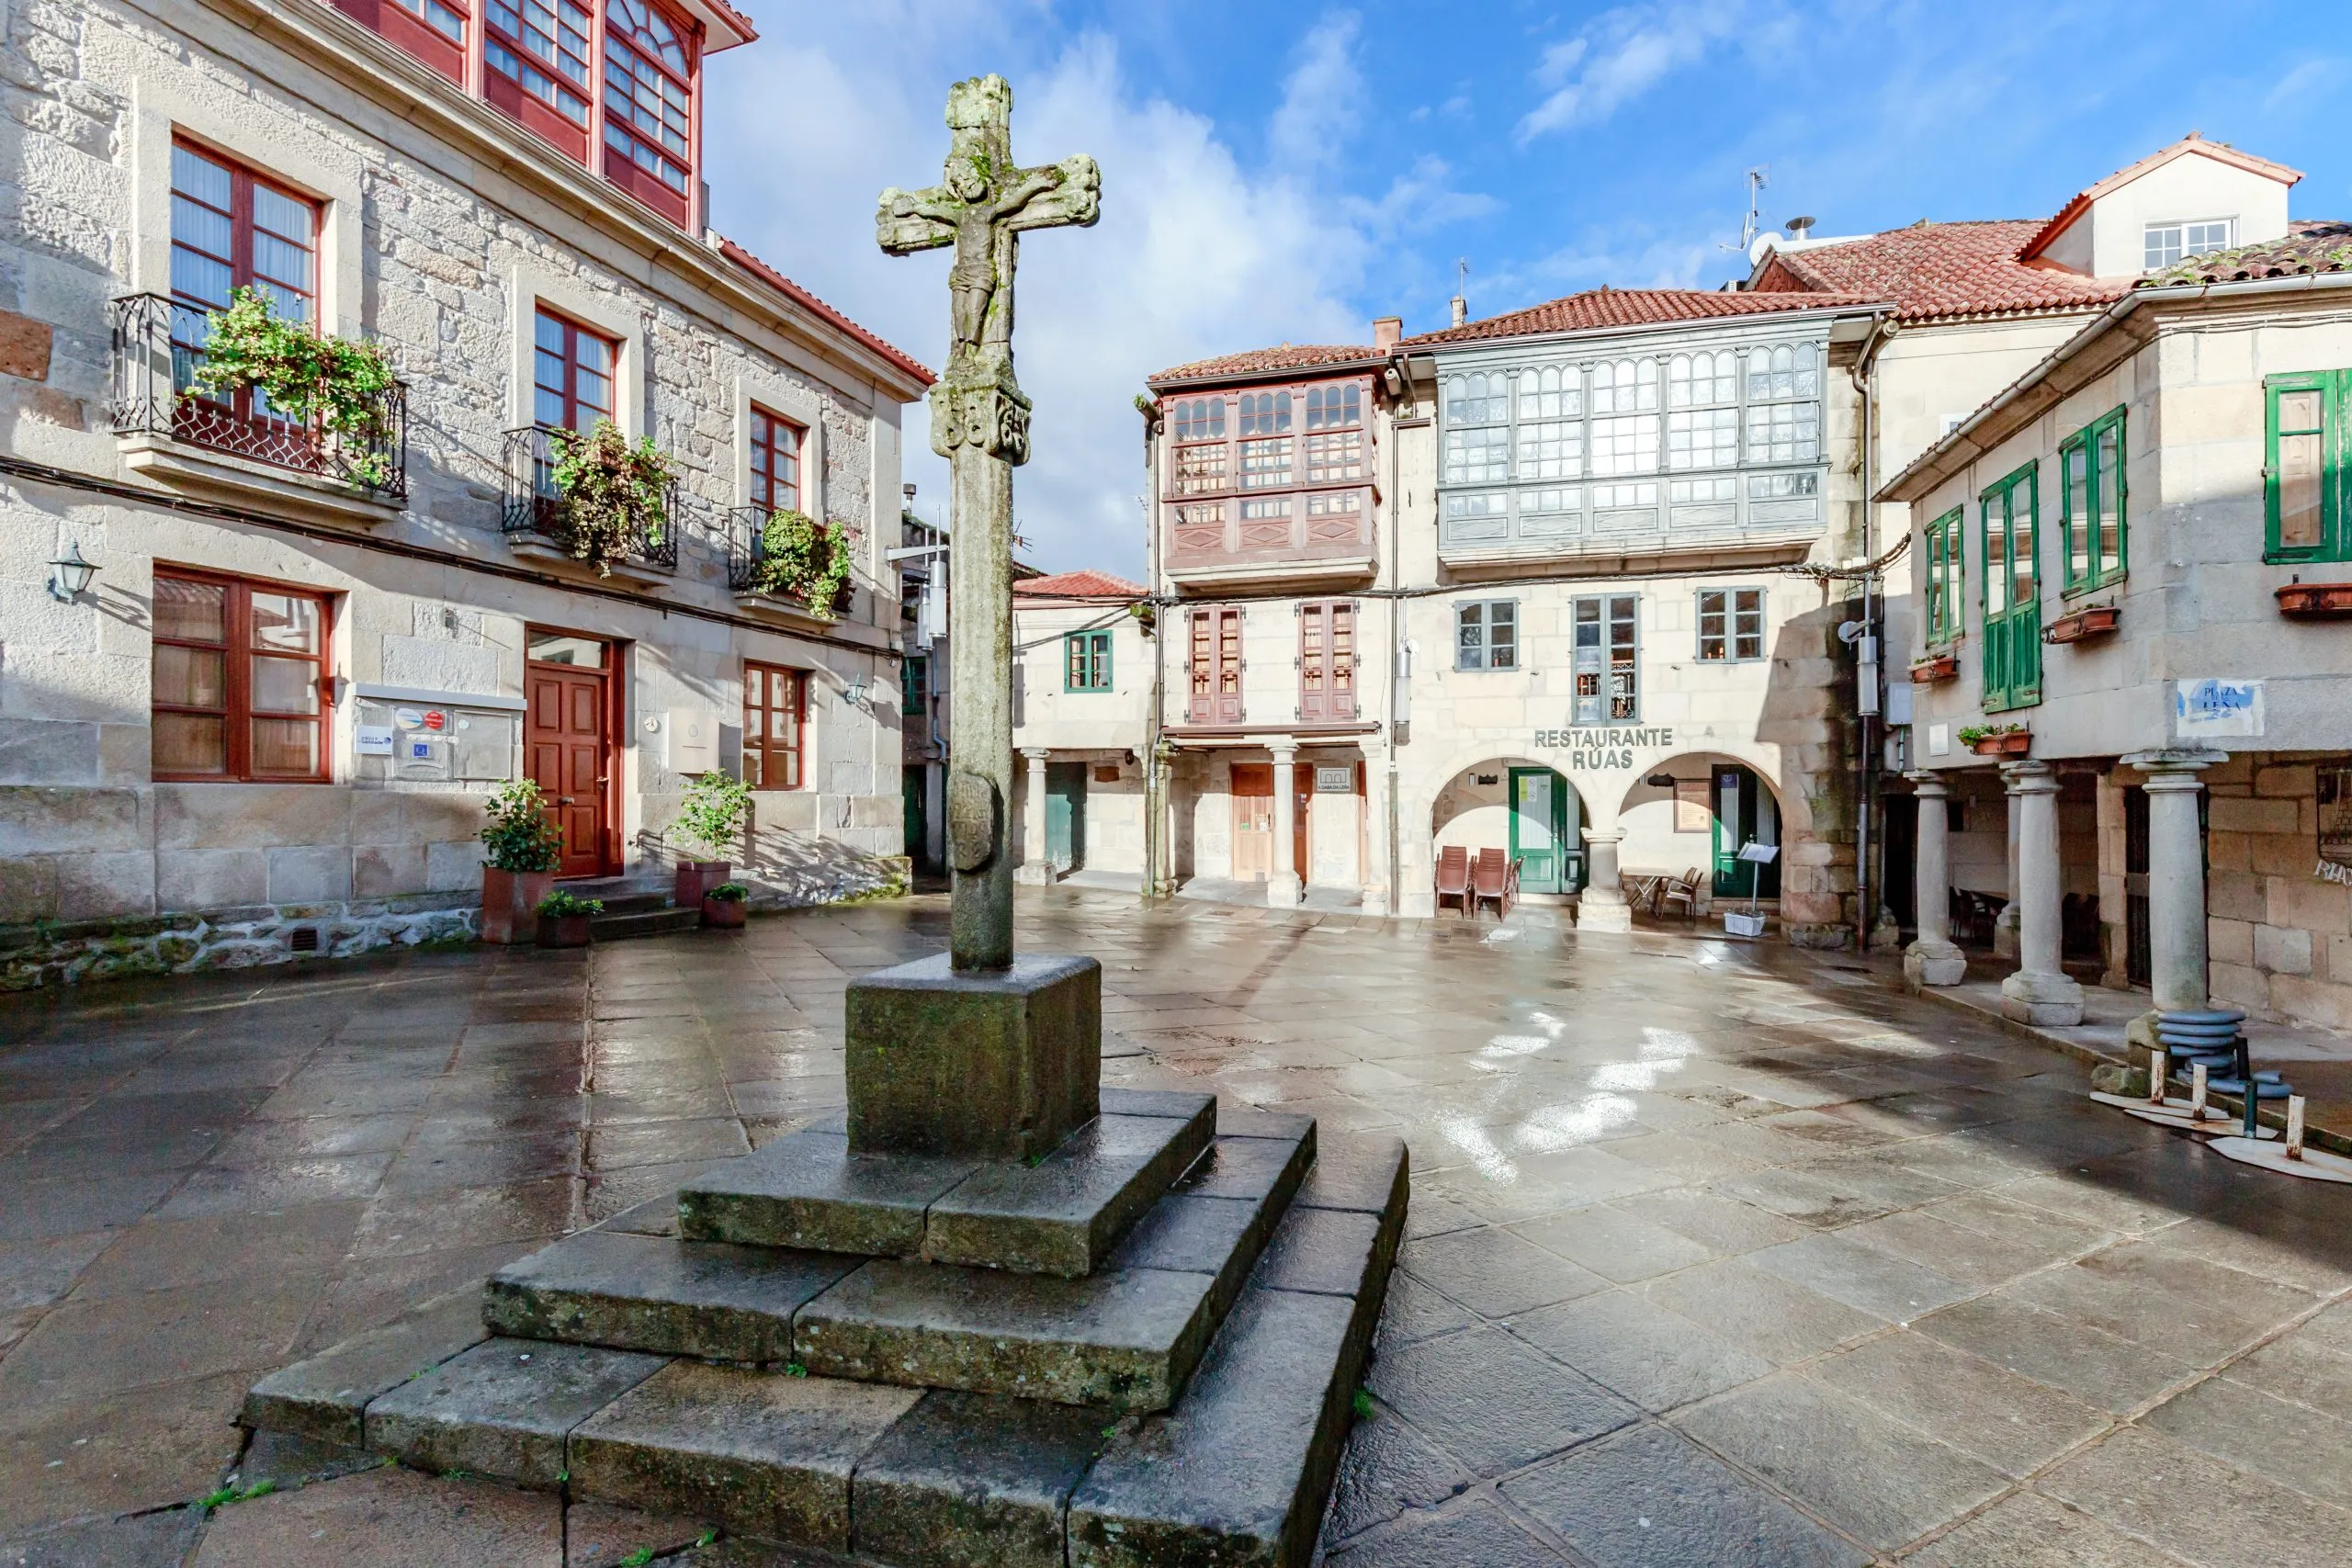 Spanien - Historischer Platz Praza da Lena in Pontevedra in Galicien. Gebäude mit farbiger Fassade, Holzfenstern, Balkonen und einem Steinkreuz in der Mitte.